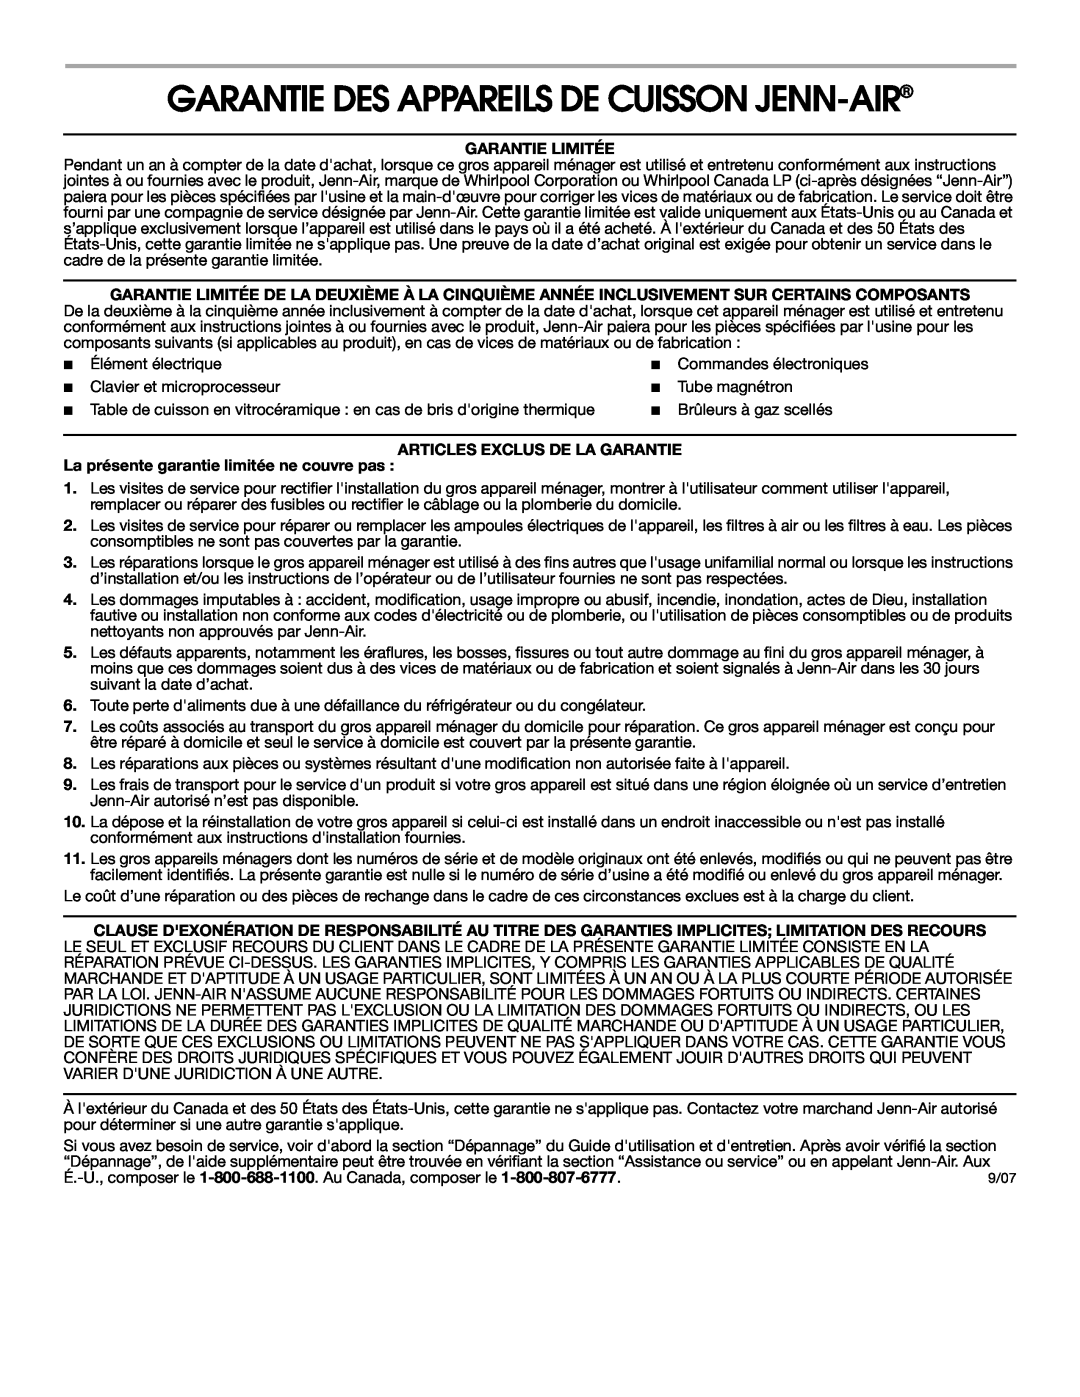 Maytag 8111P536-60 Garantie Des Appareils De Cuisson Jenn-Air, Garantie Limitée, Articles Exclus De La Garantie 